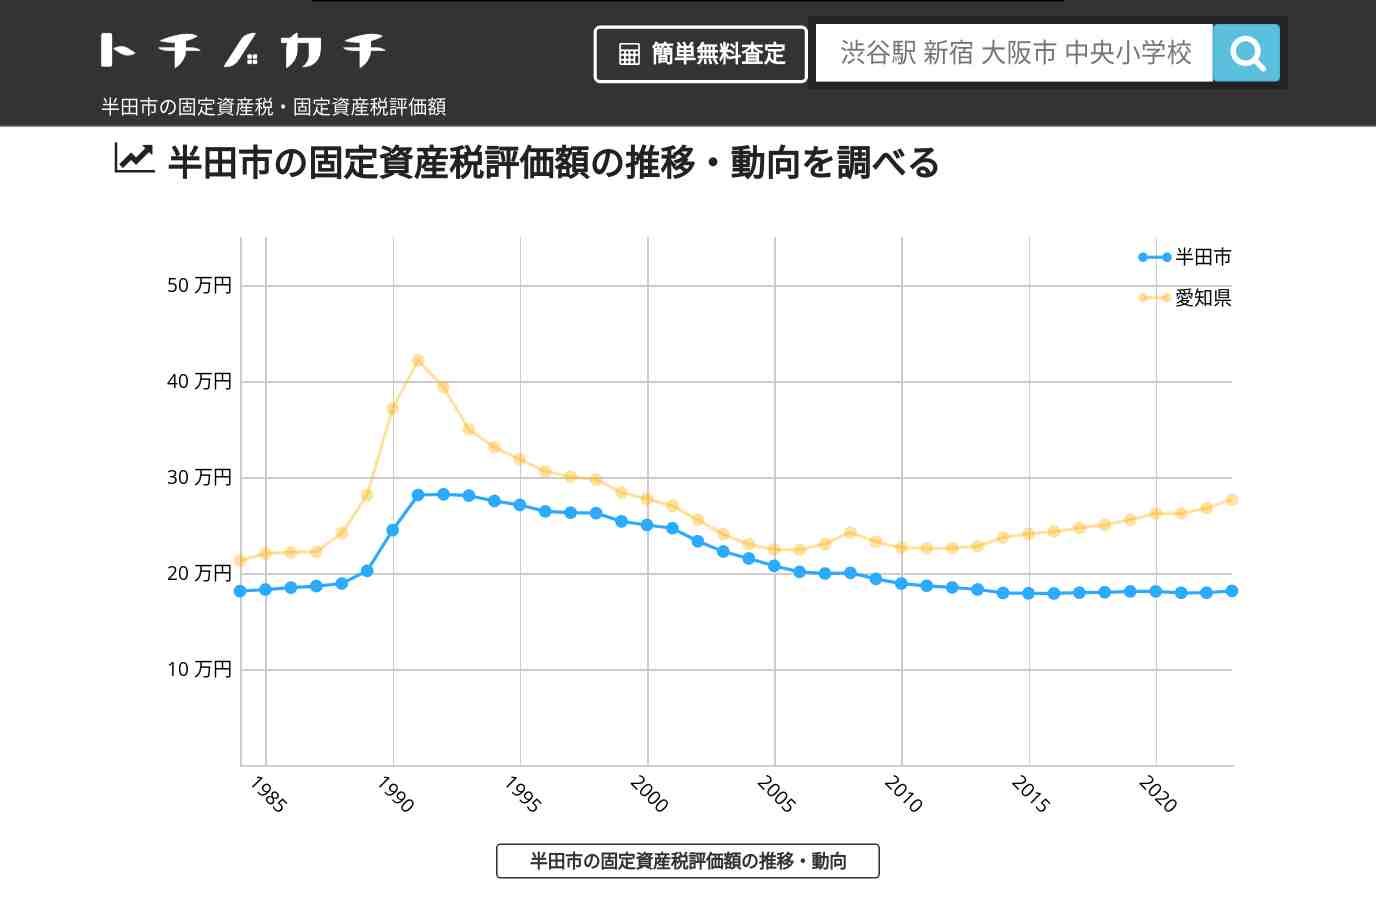 岩滑小学校(愛知県 半田市)周辺の固定資産税・固定資産税評価額 | トチノカチ